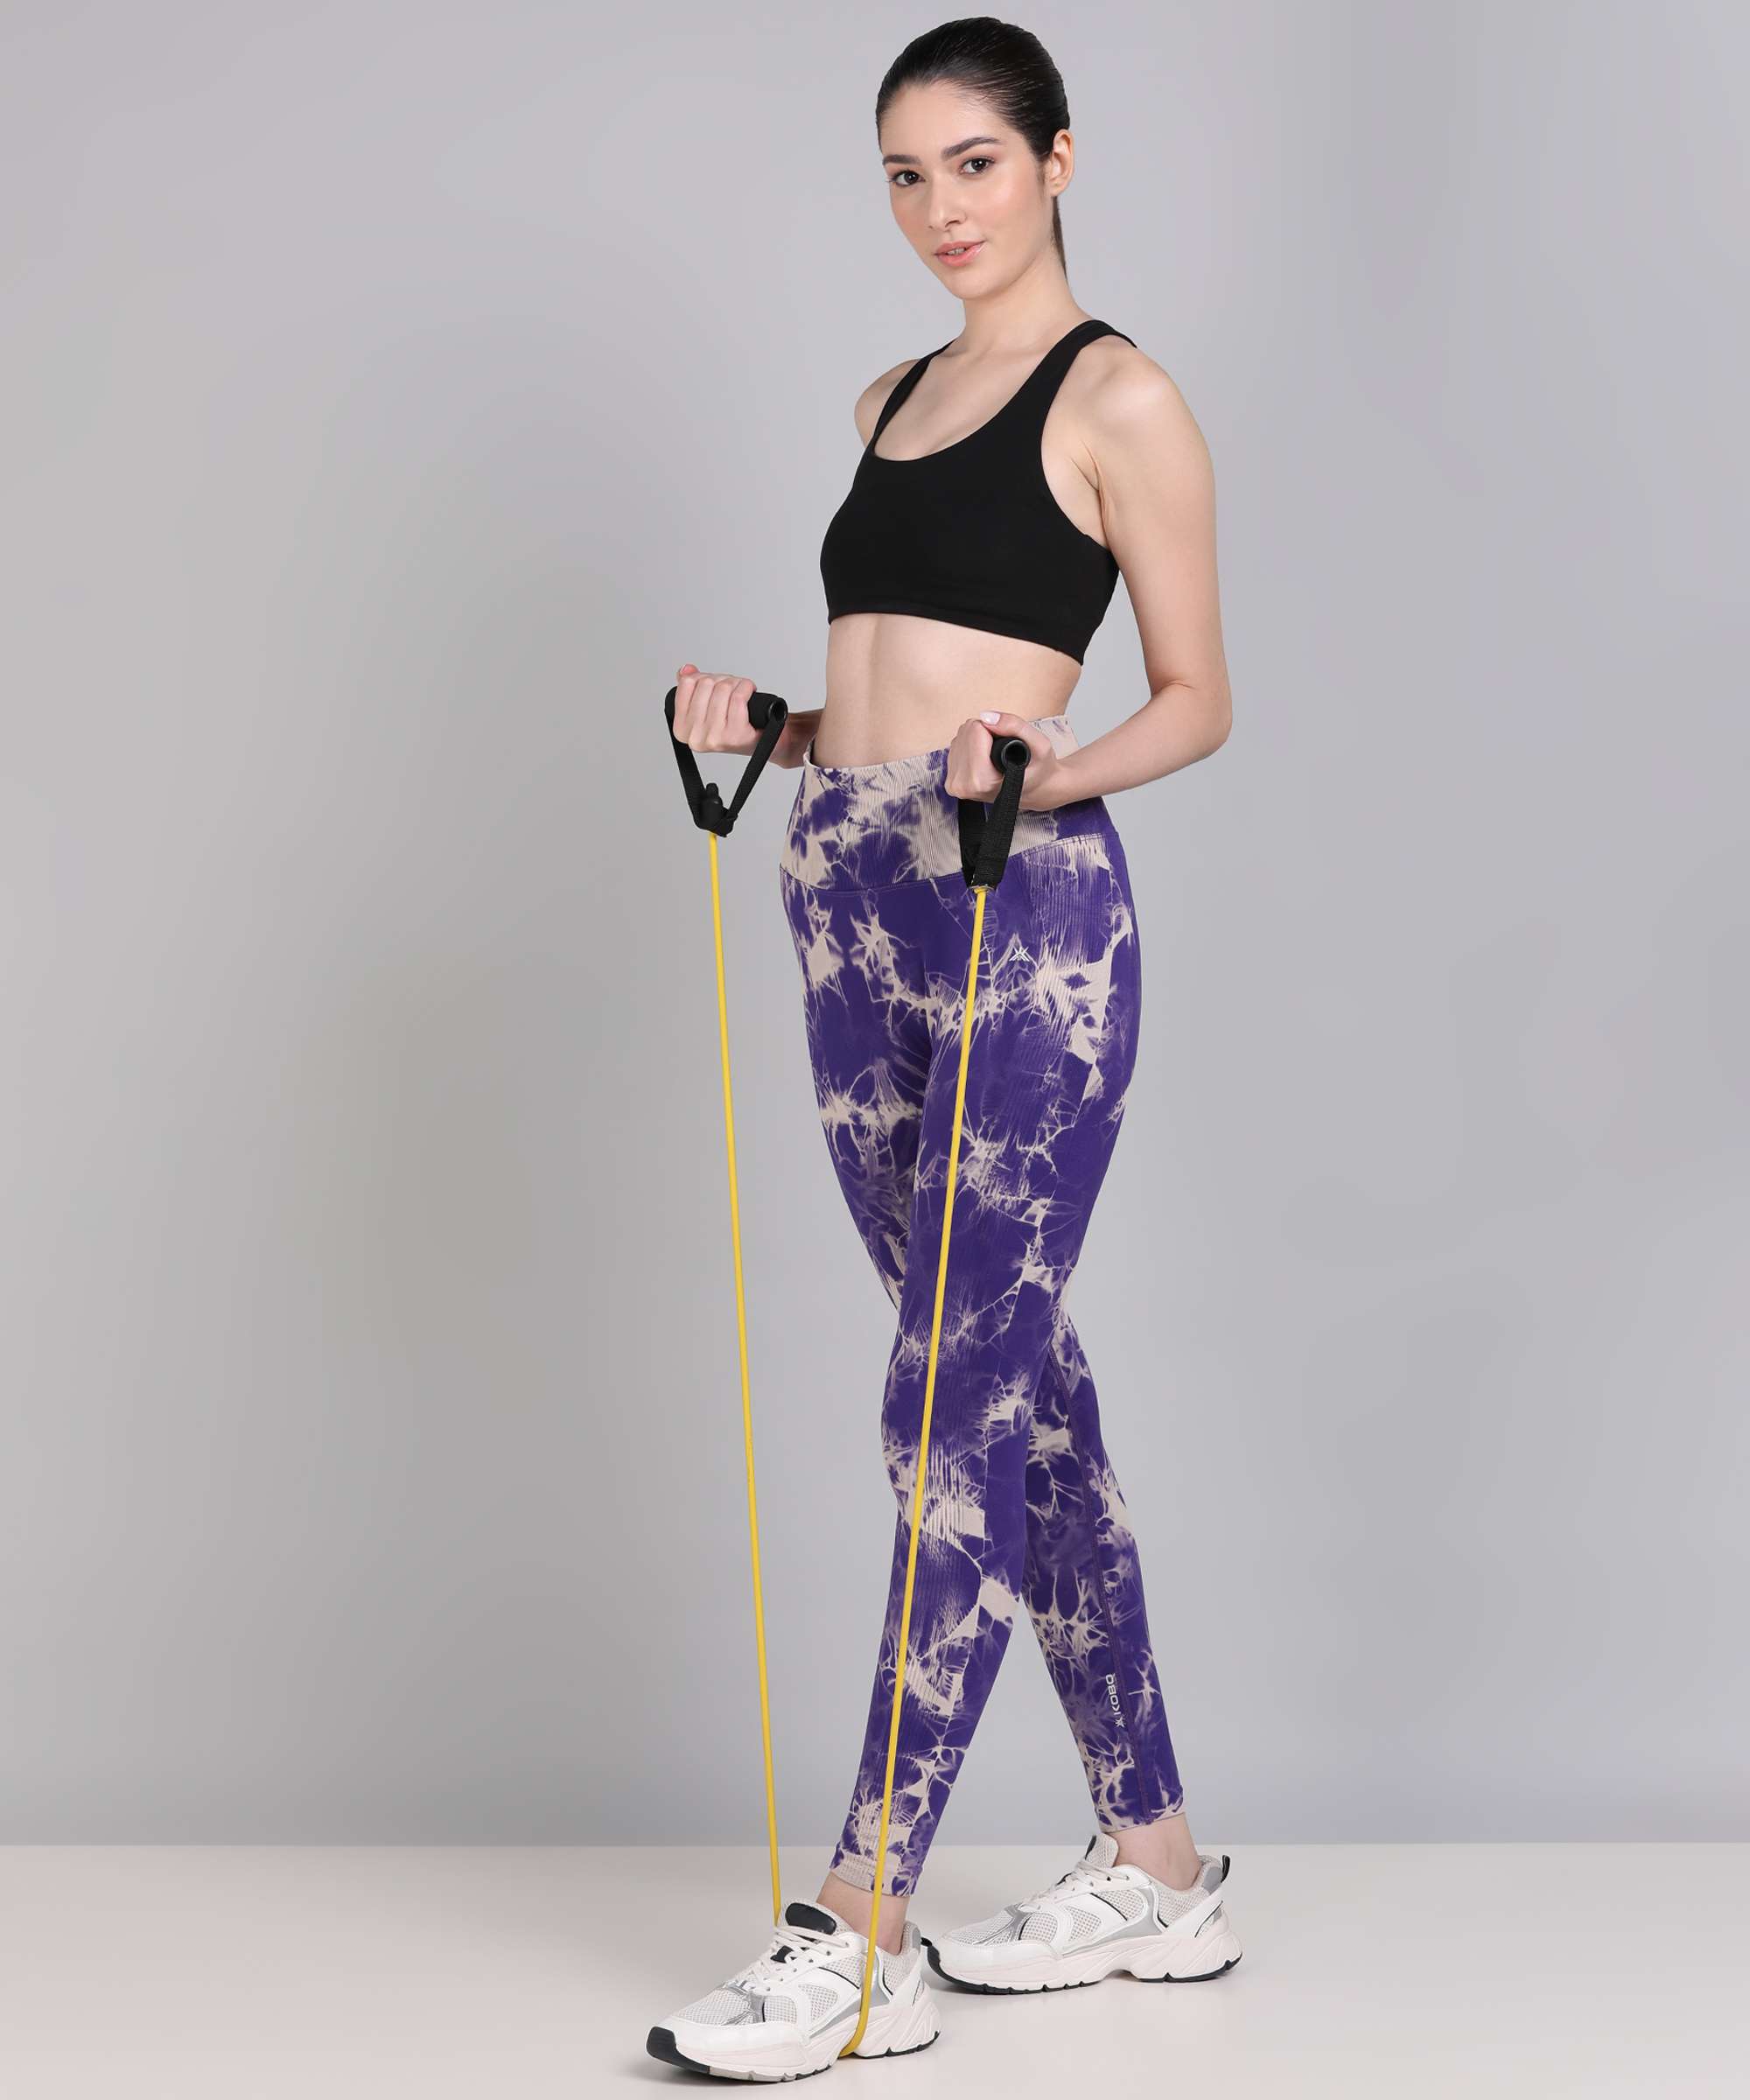 Fitness workout seamless high waist leggings - Armour - Squat